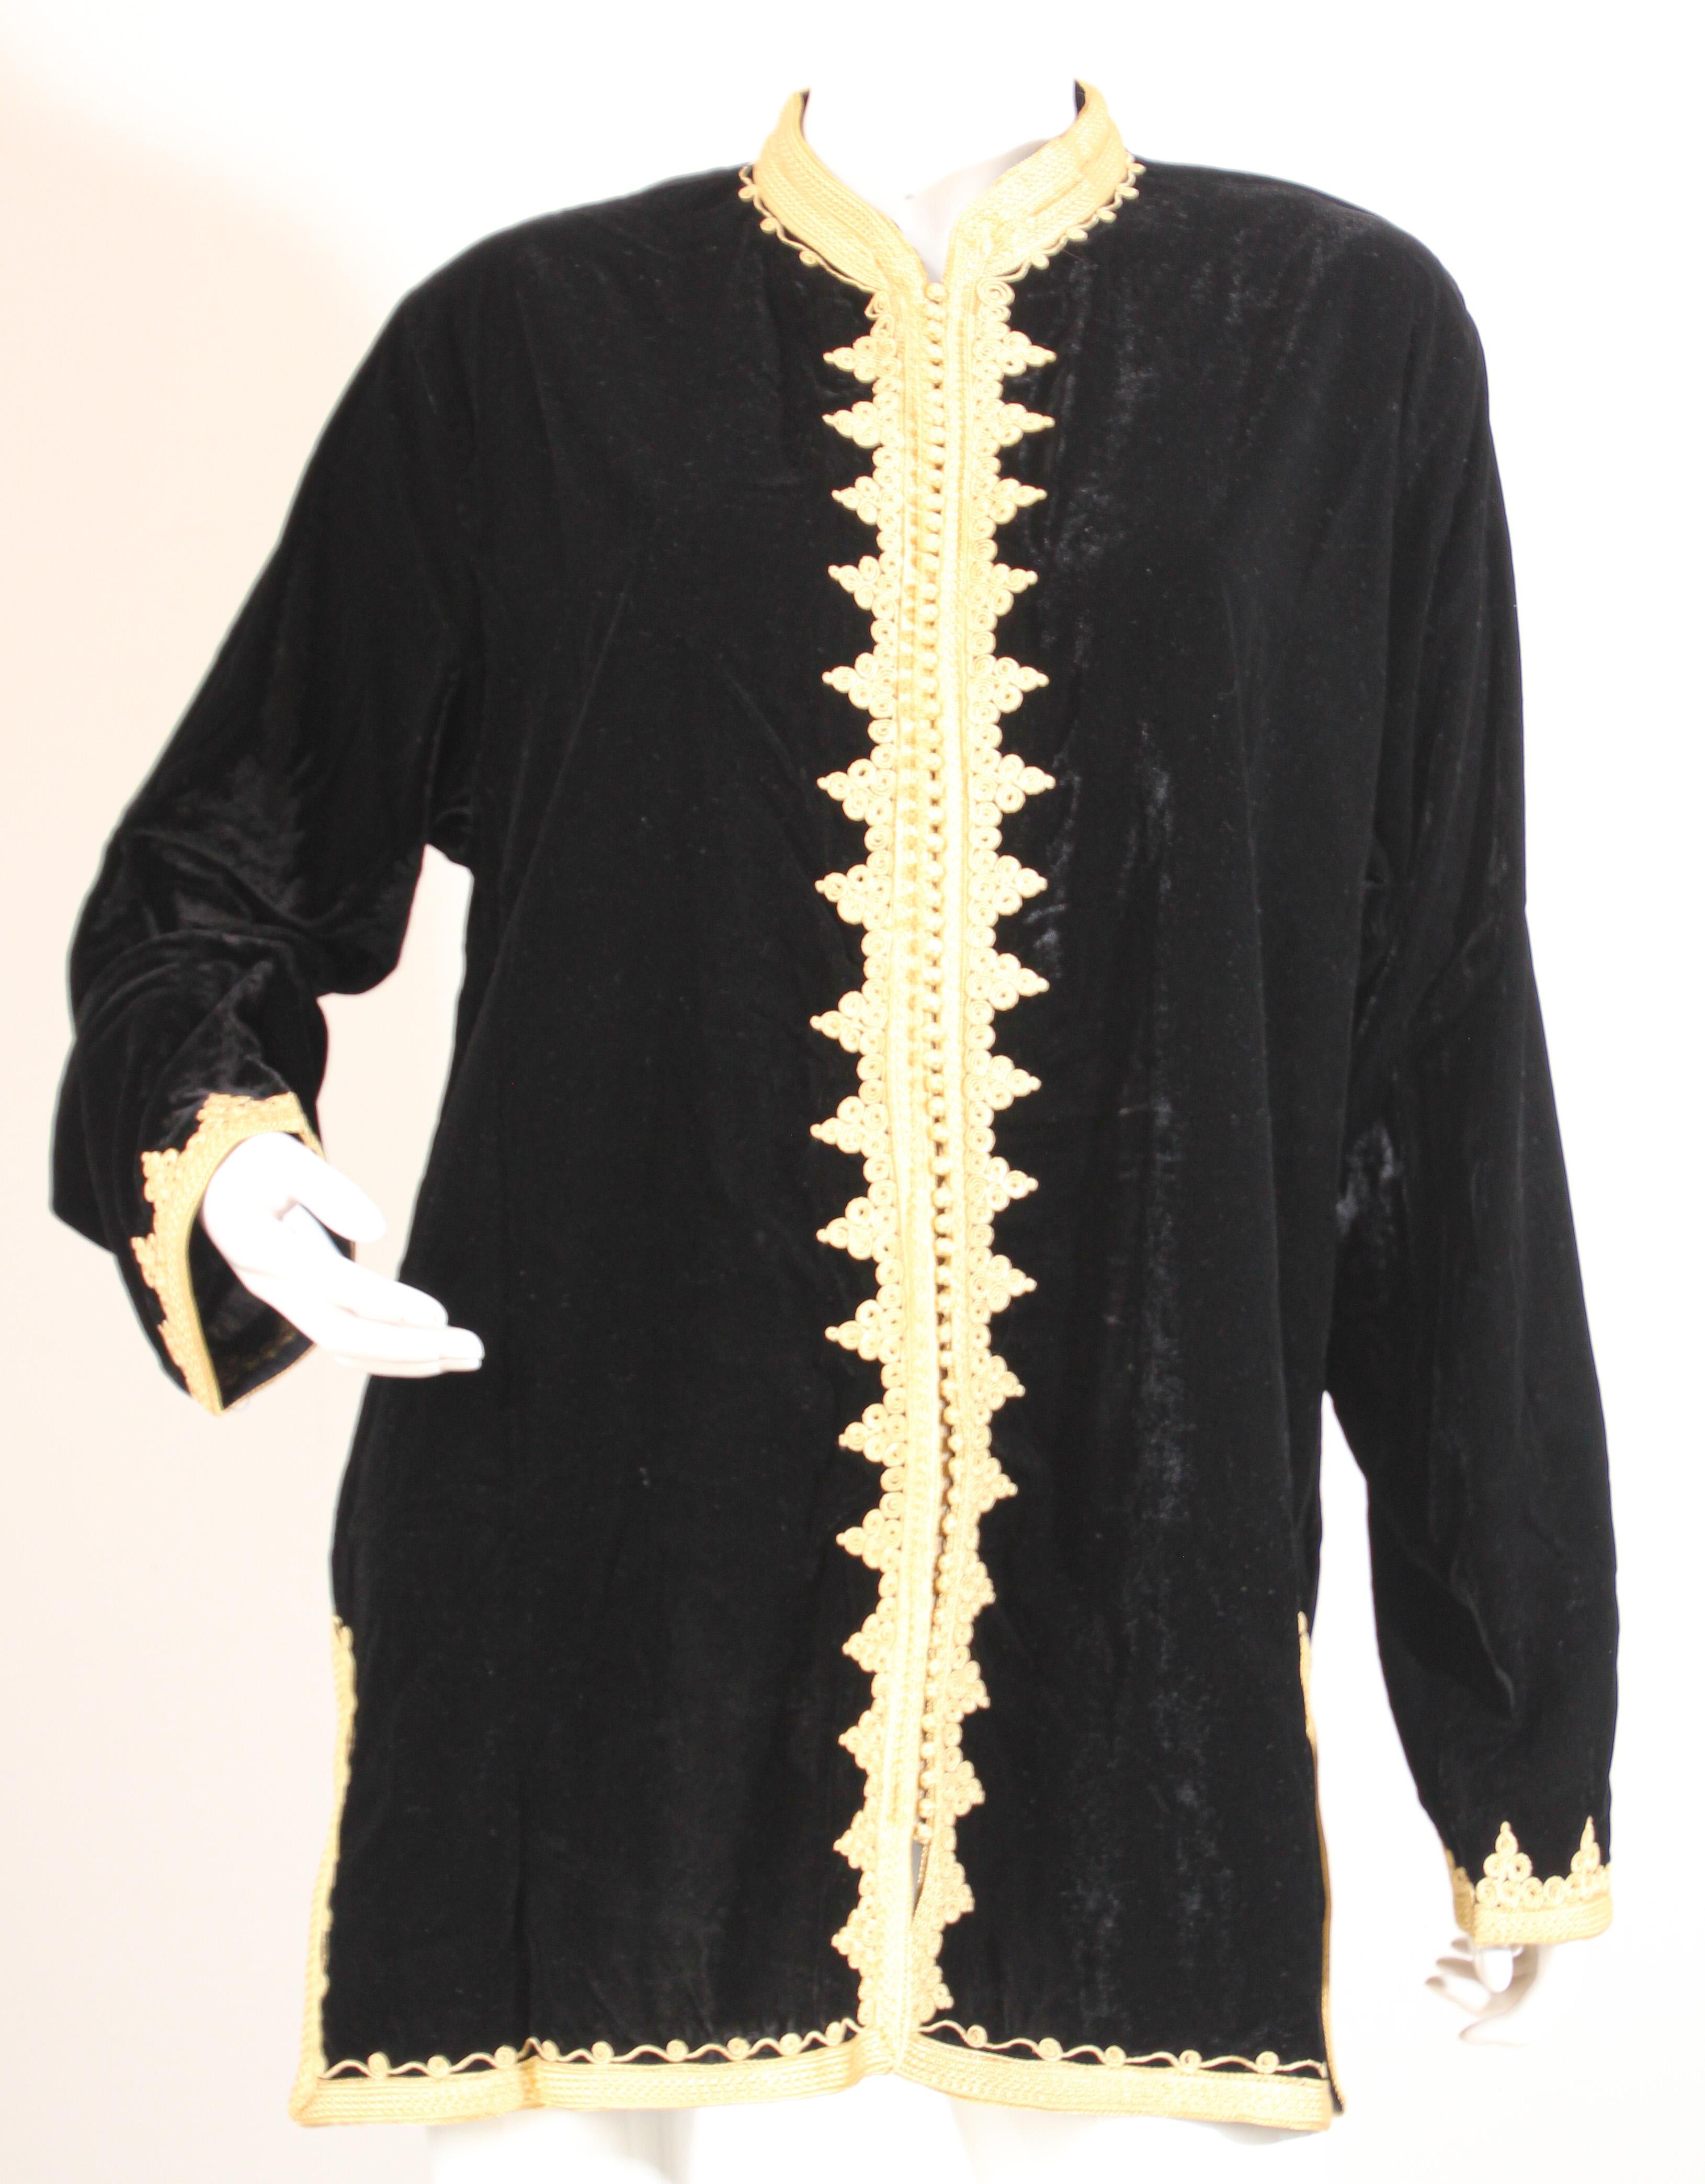 Caftan marocain Gilet en velours noir avec broderies dorées
Ce caftan traditionnel marocain est brodé et agrémenté d'une bordure dorée.
Gilet de soirée en robe courte traditionnelle marocaine.
Le caftan présente une encolure traditionnelle et des